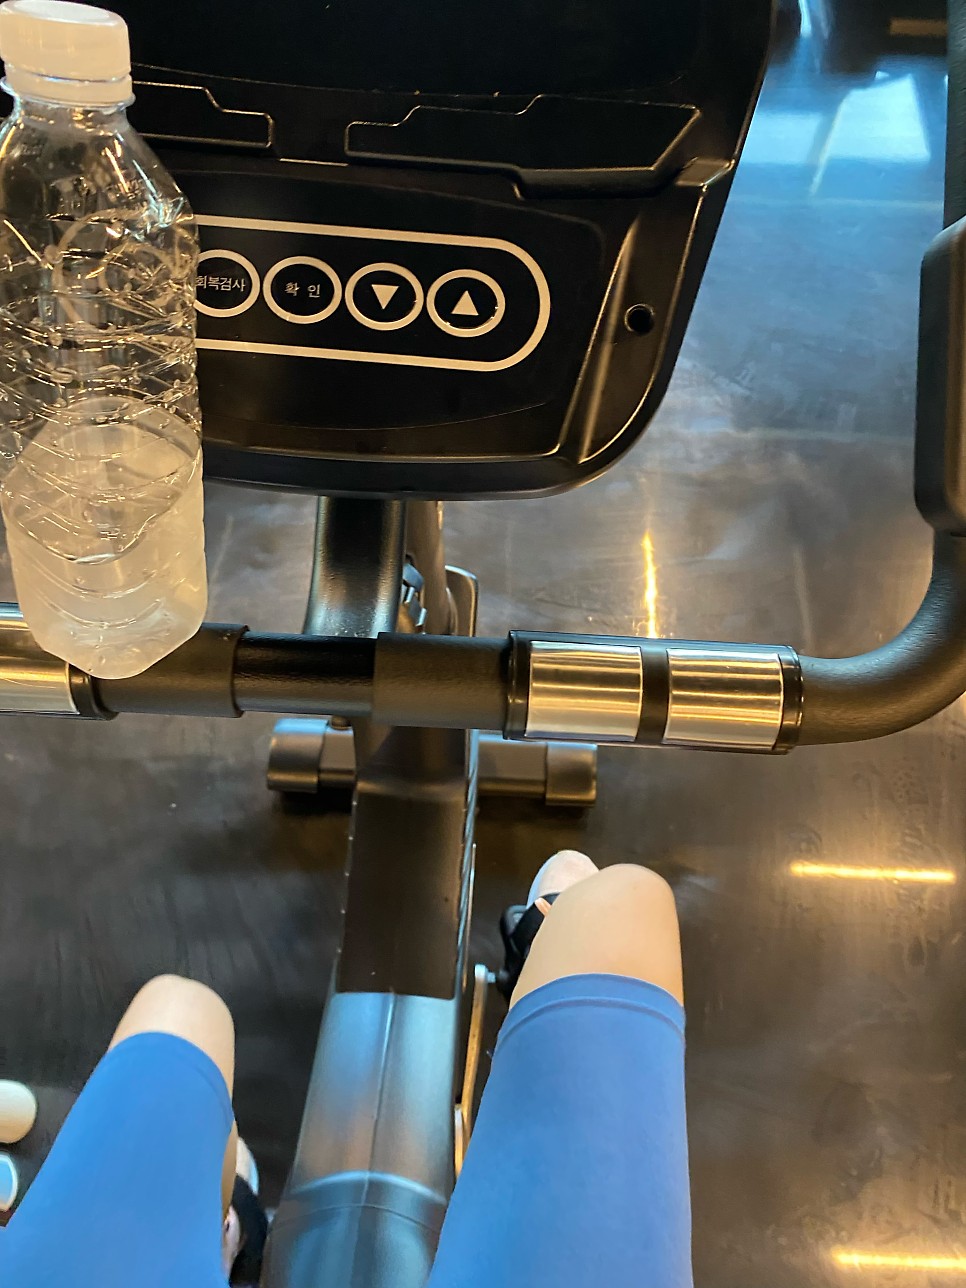 실내자전거 싸이클 효과 다이어트 칼로리 운동시간 무릎 운동 방법 아침 공복 유산소 추천 후기